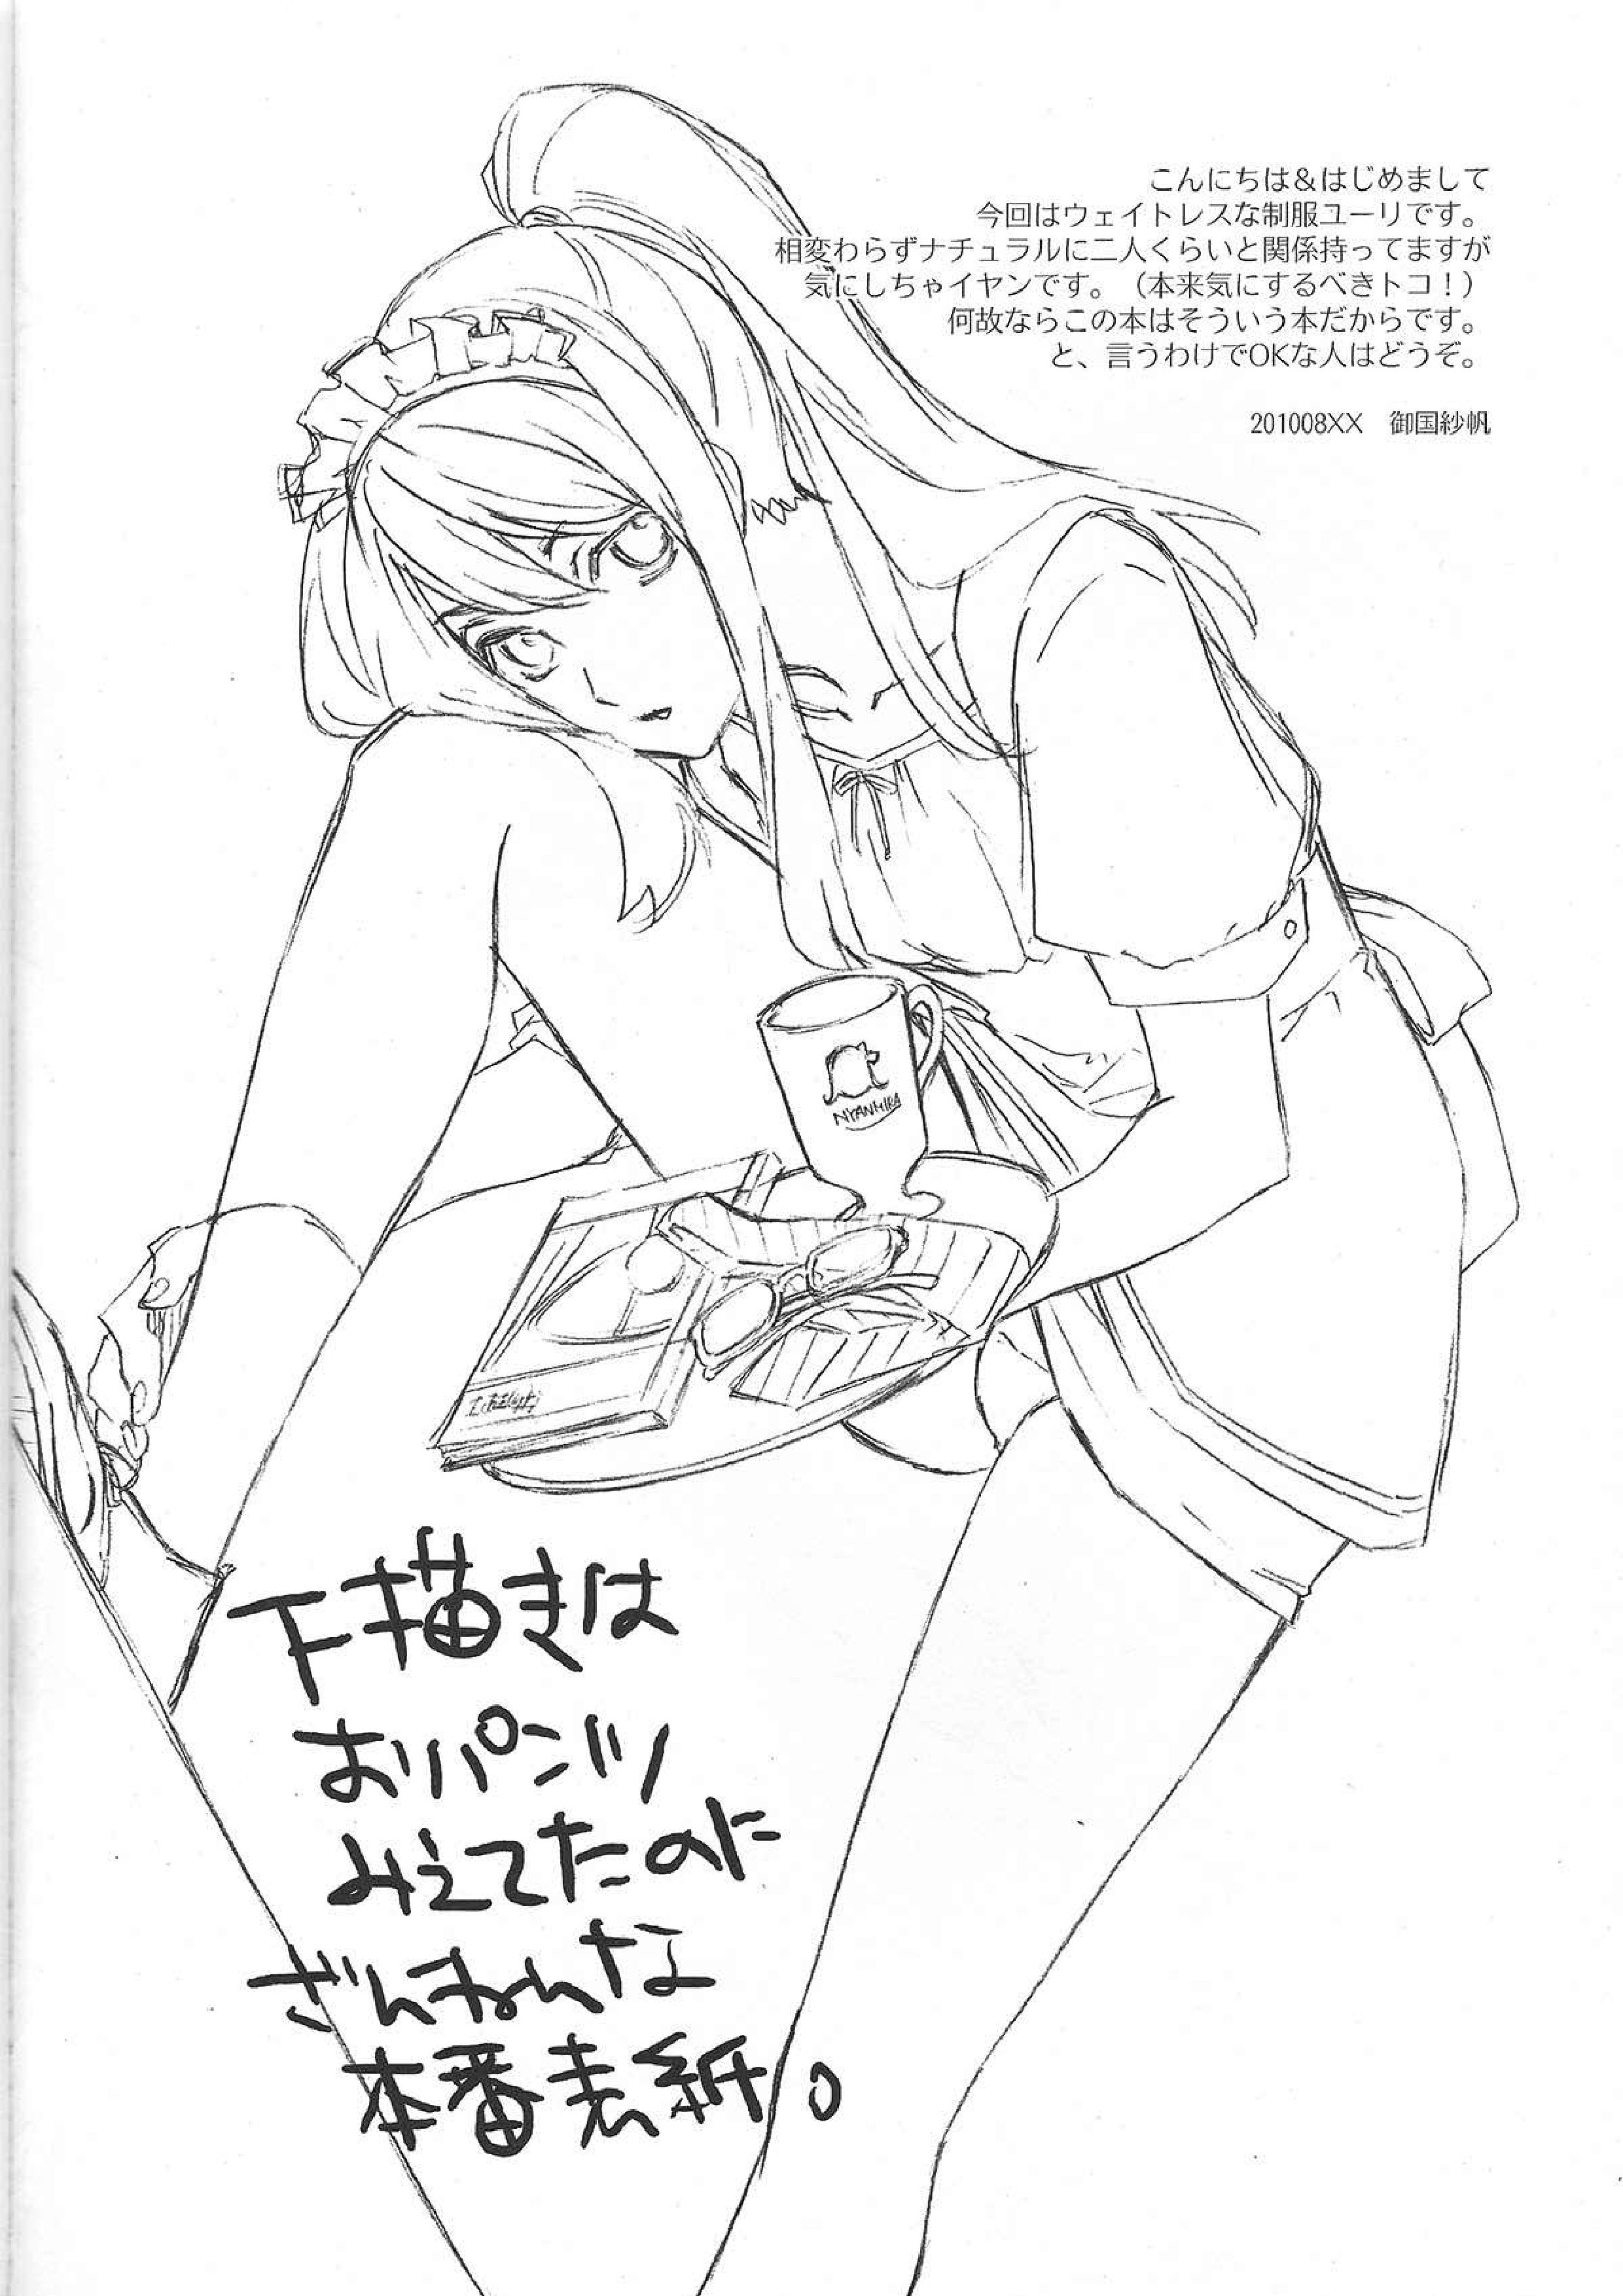 ユーリが女子の制服で学園モノな本。3(全画像表示)【BL同人誌・漫画 